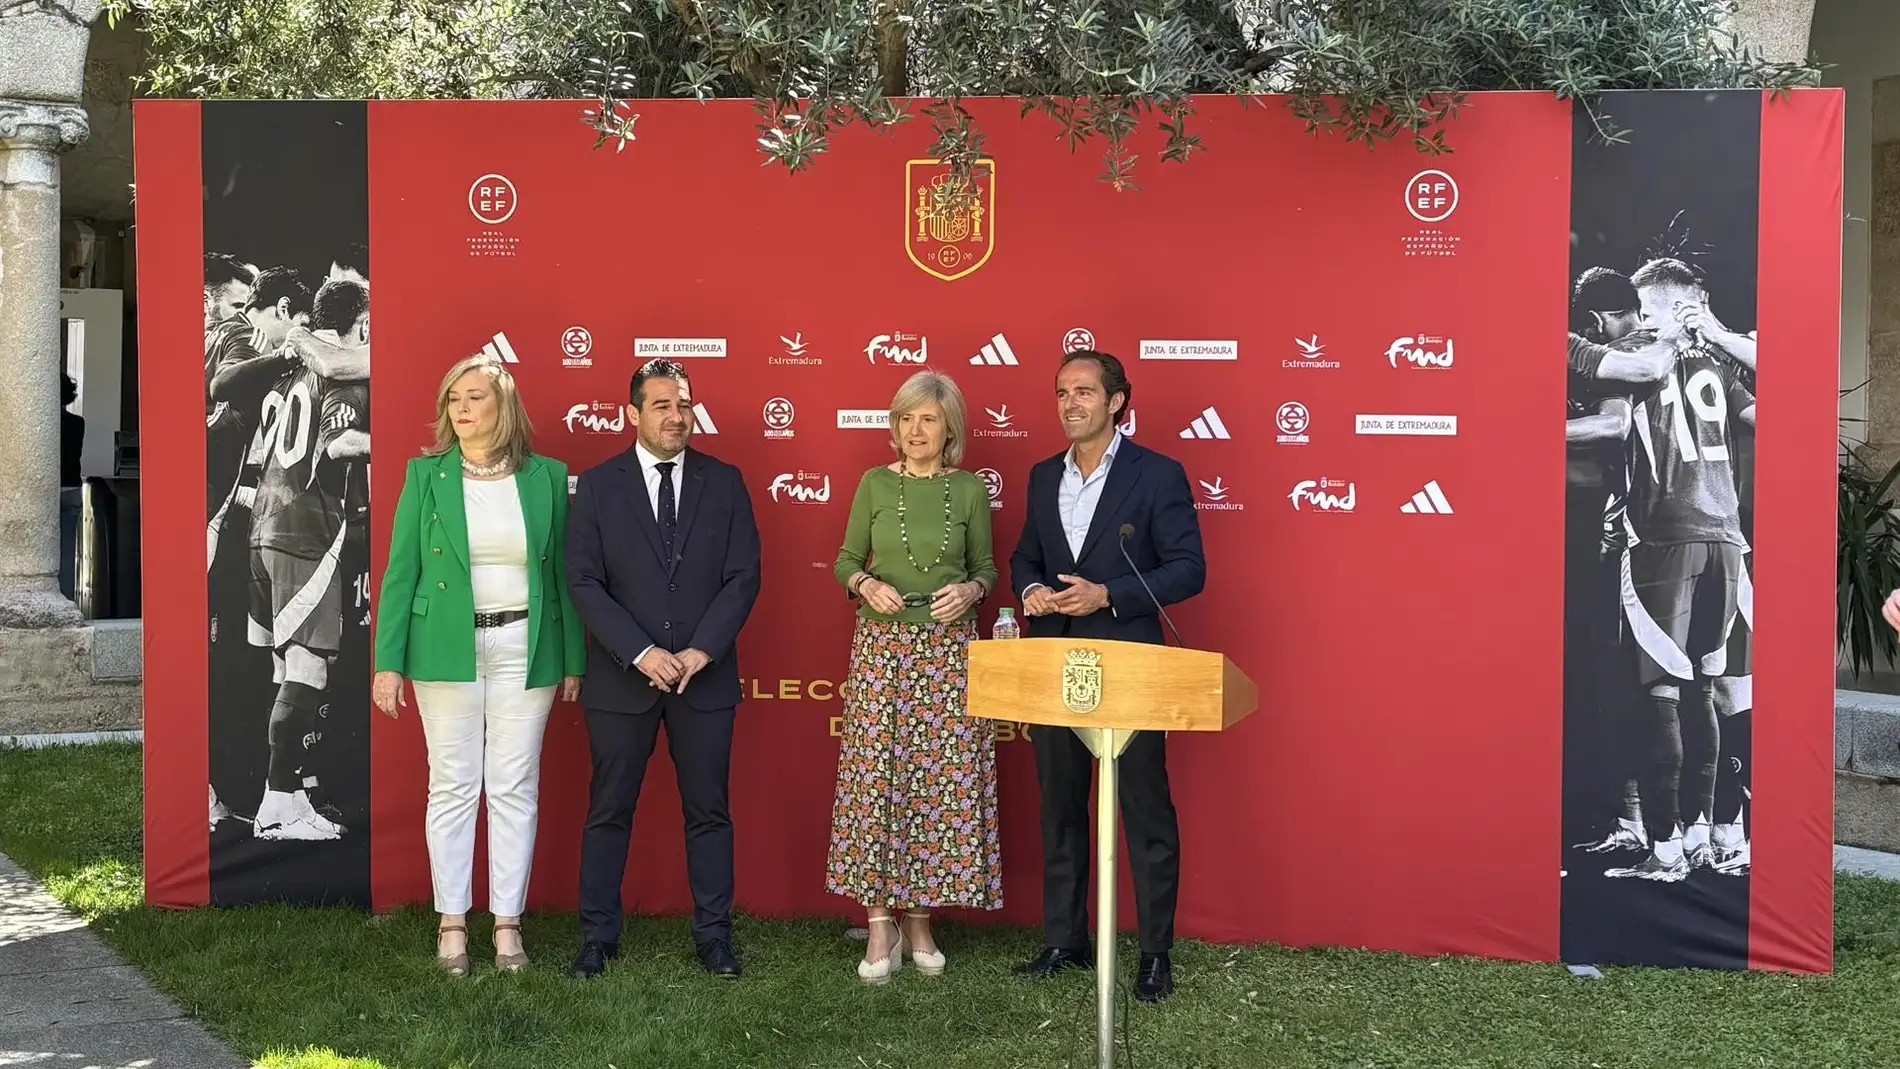 Presentación del partido amistoso de fútbol entre las selecciones de España y Andorra que tendrá lugar en Badajoz el 5 de junio